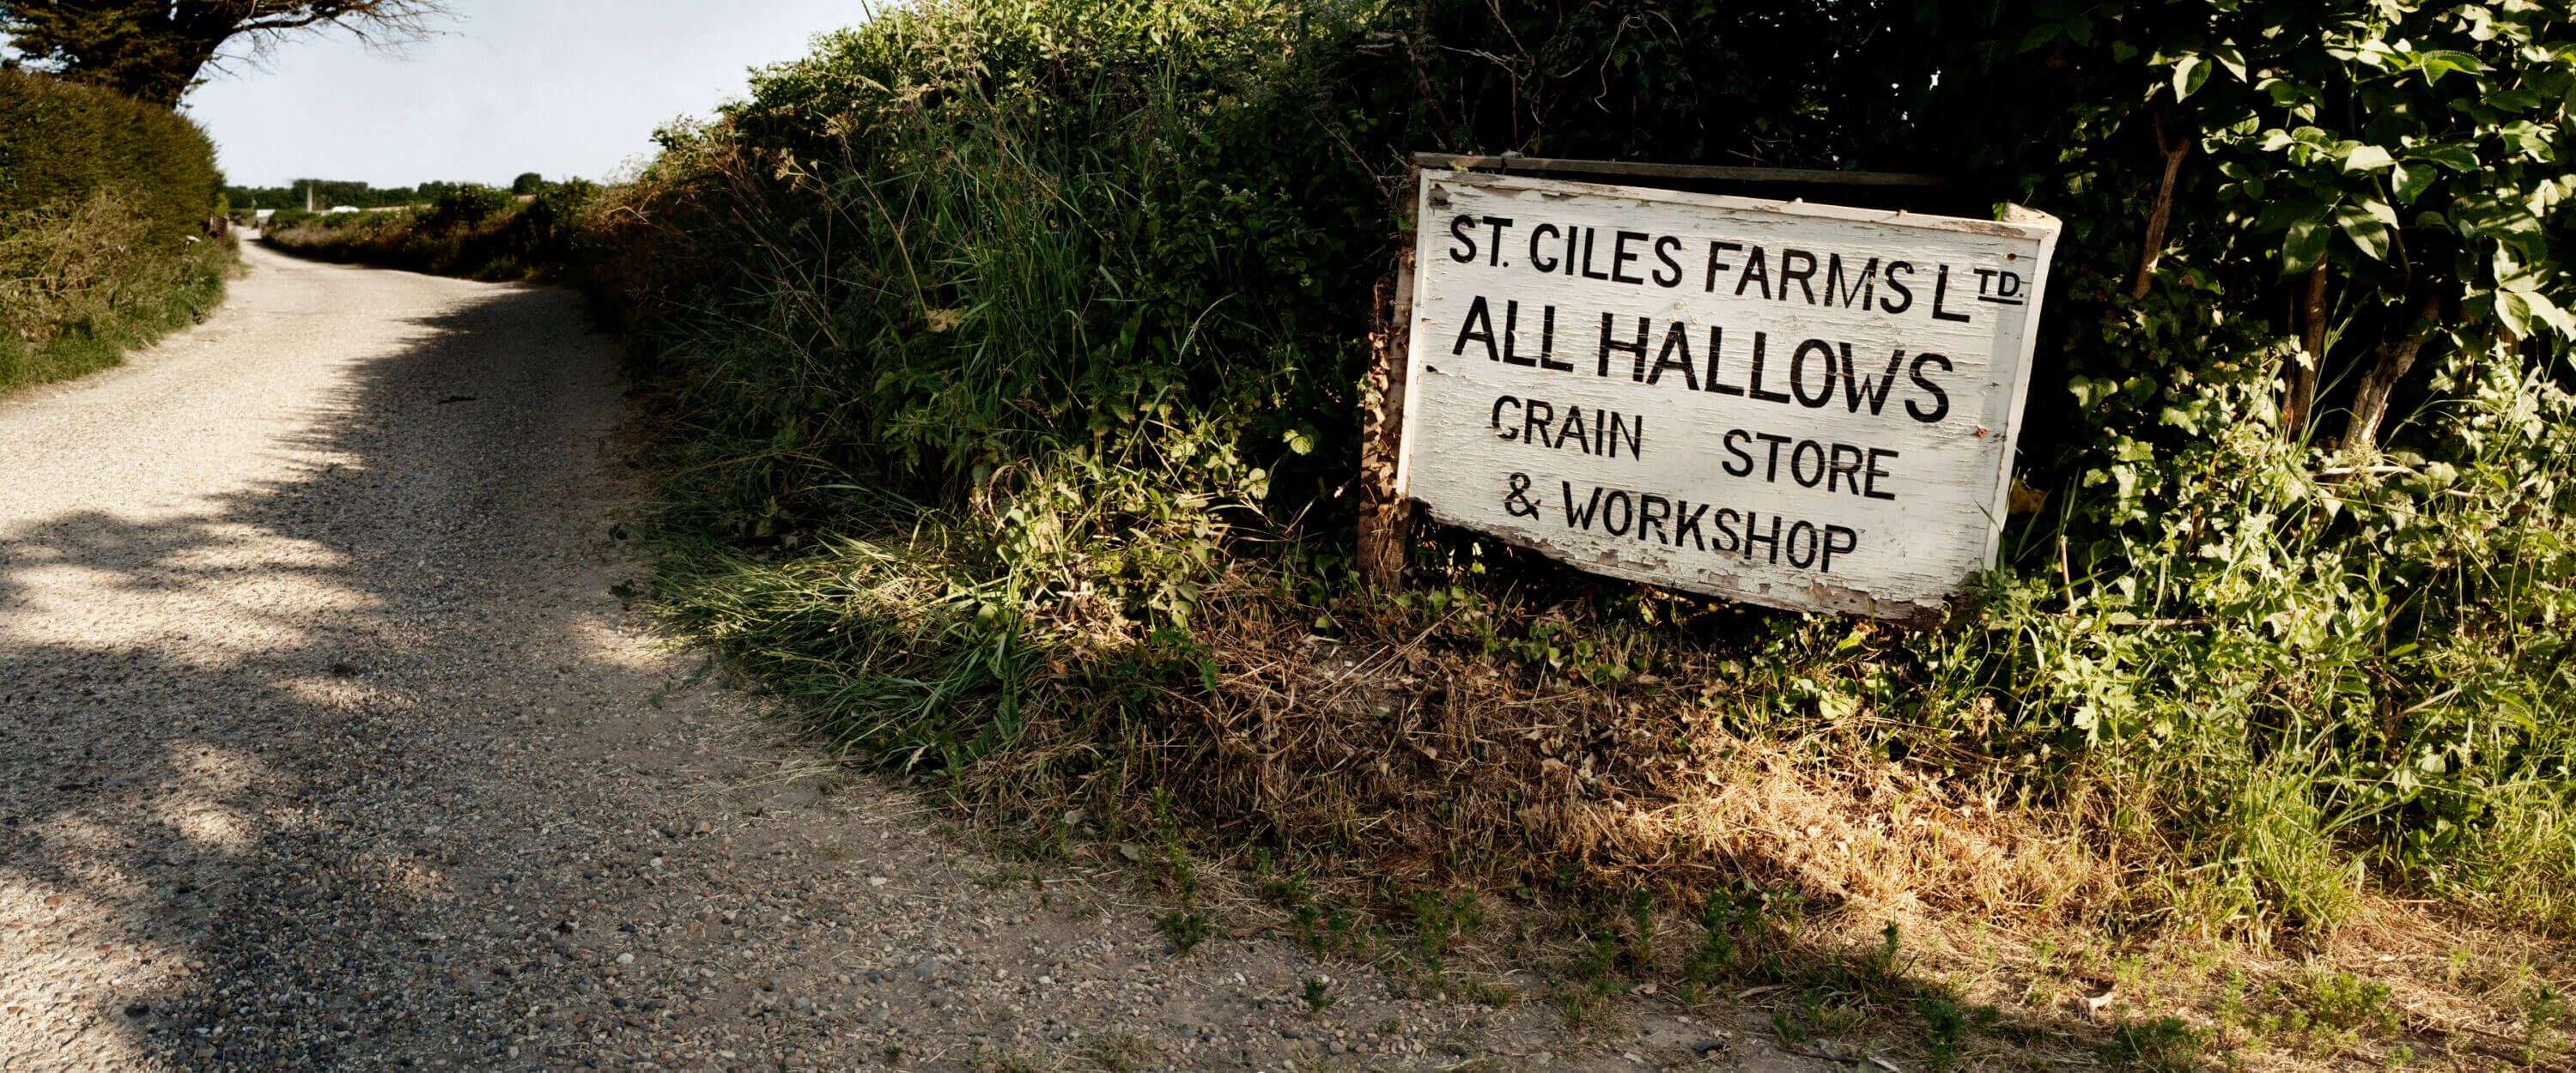 St Giles Farm House All Hallows Farm